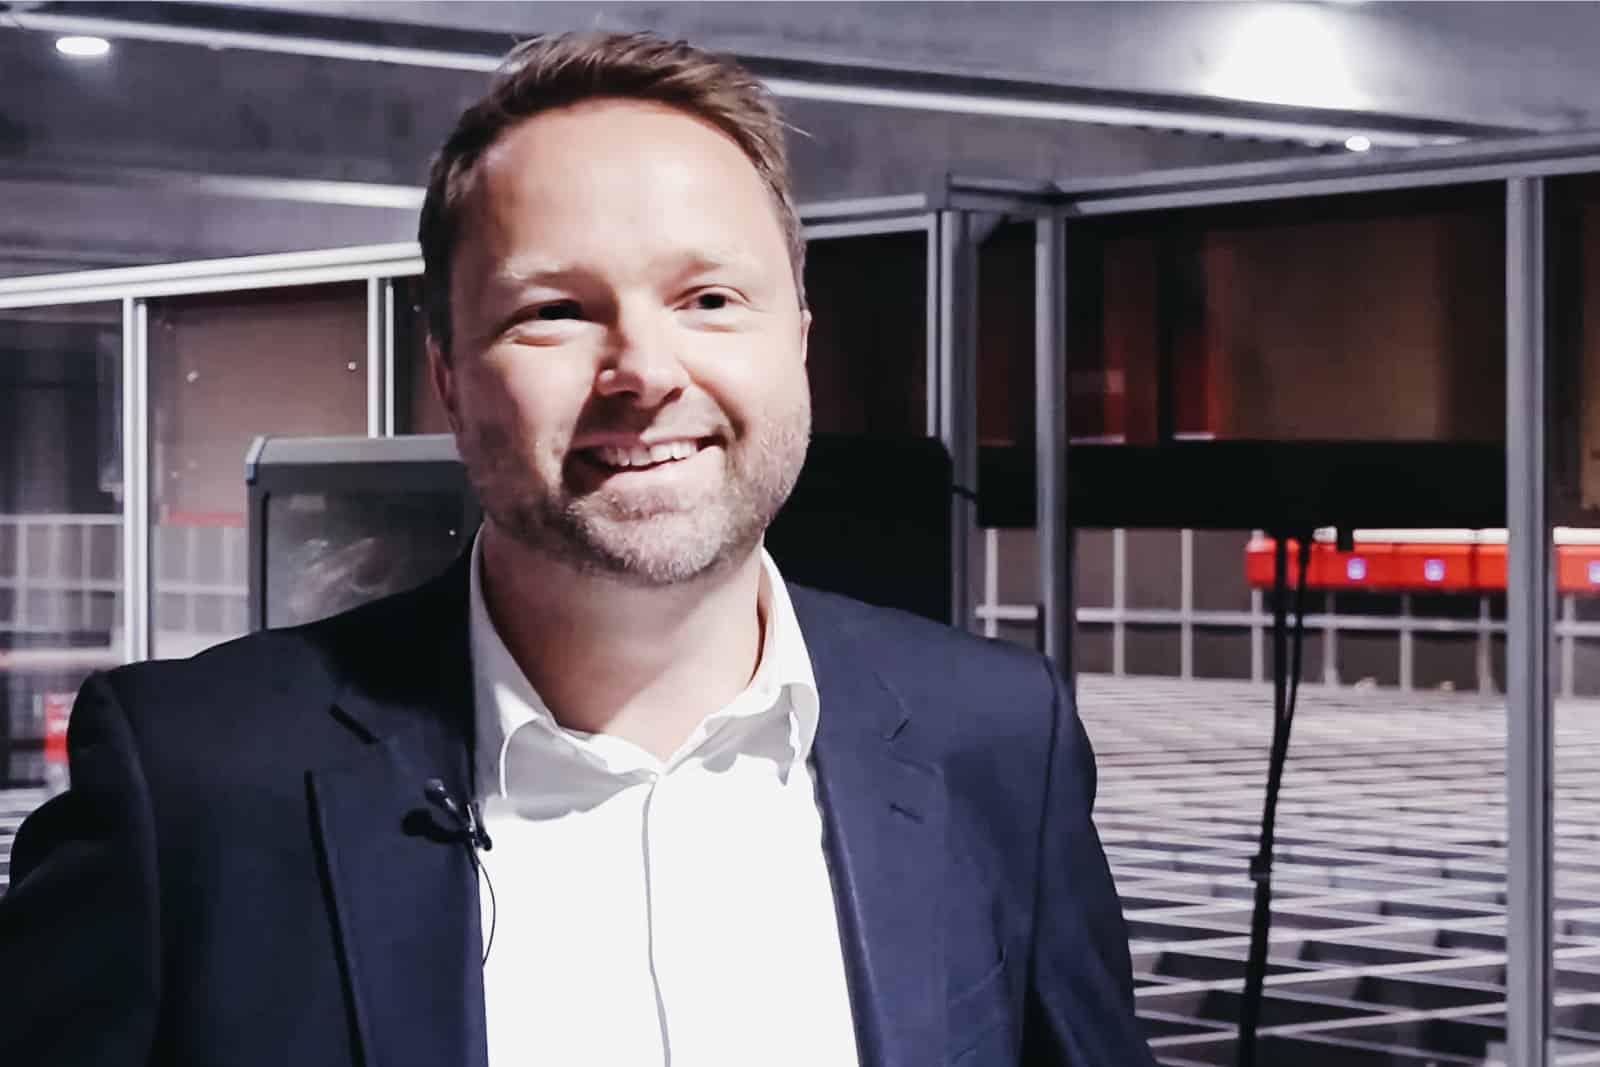 Ivan Jæger Christiansen, Managing Director of Proshop